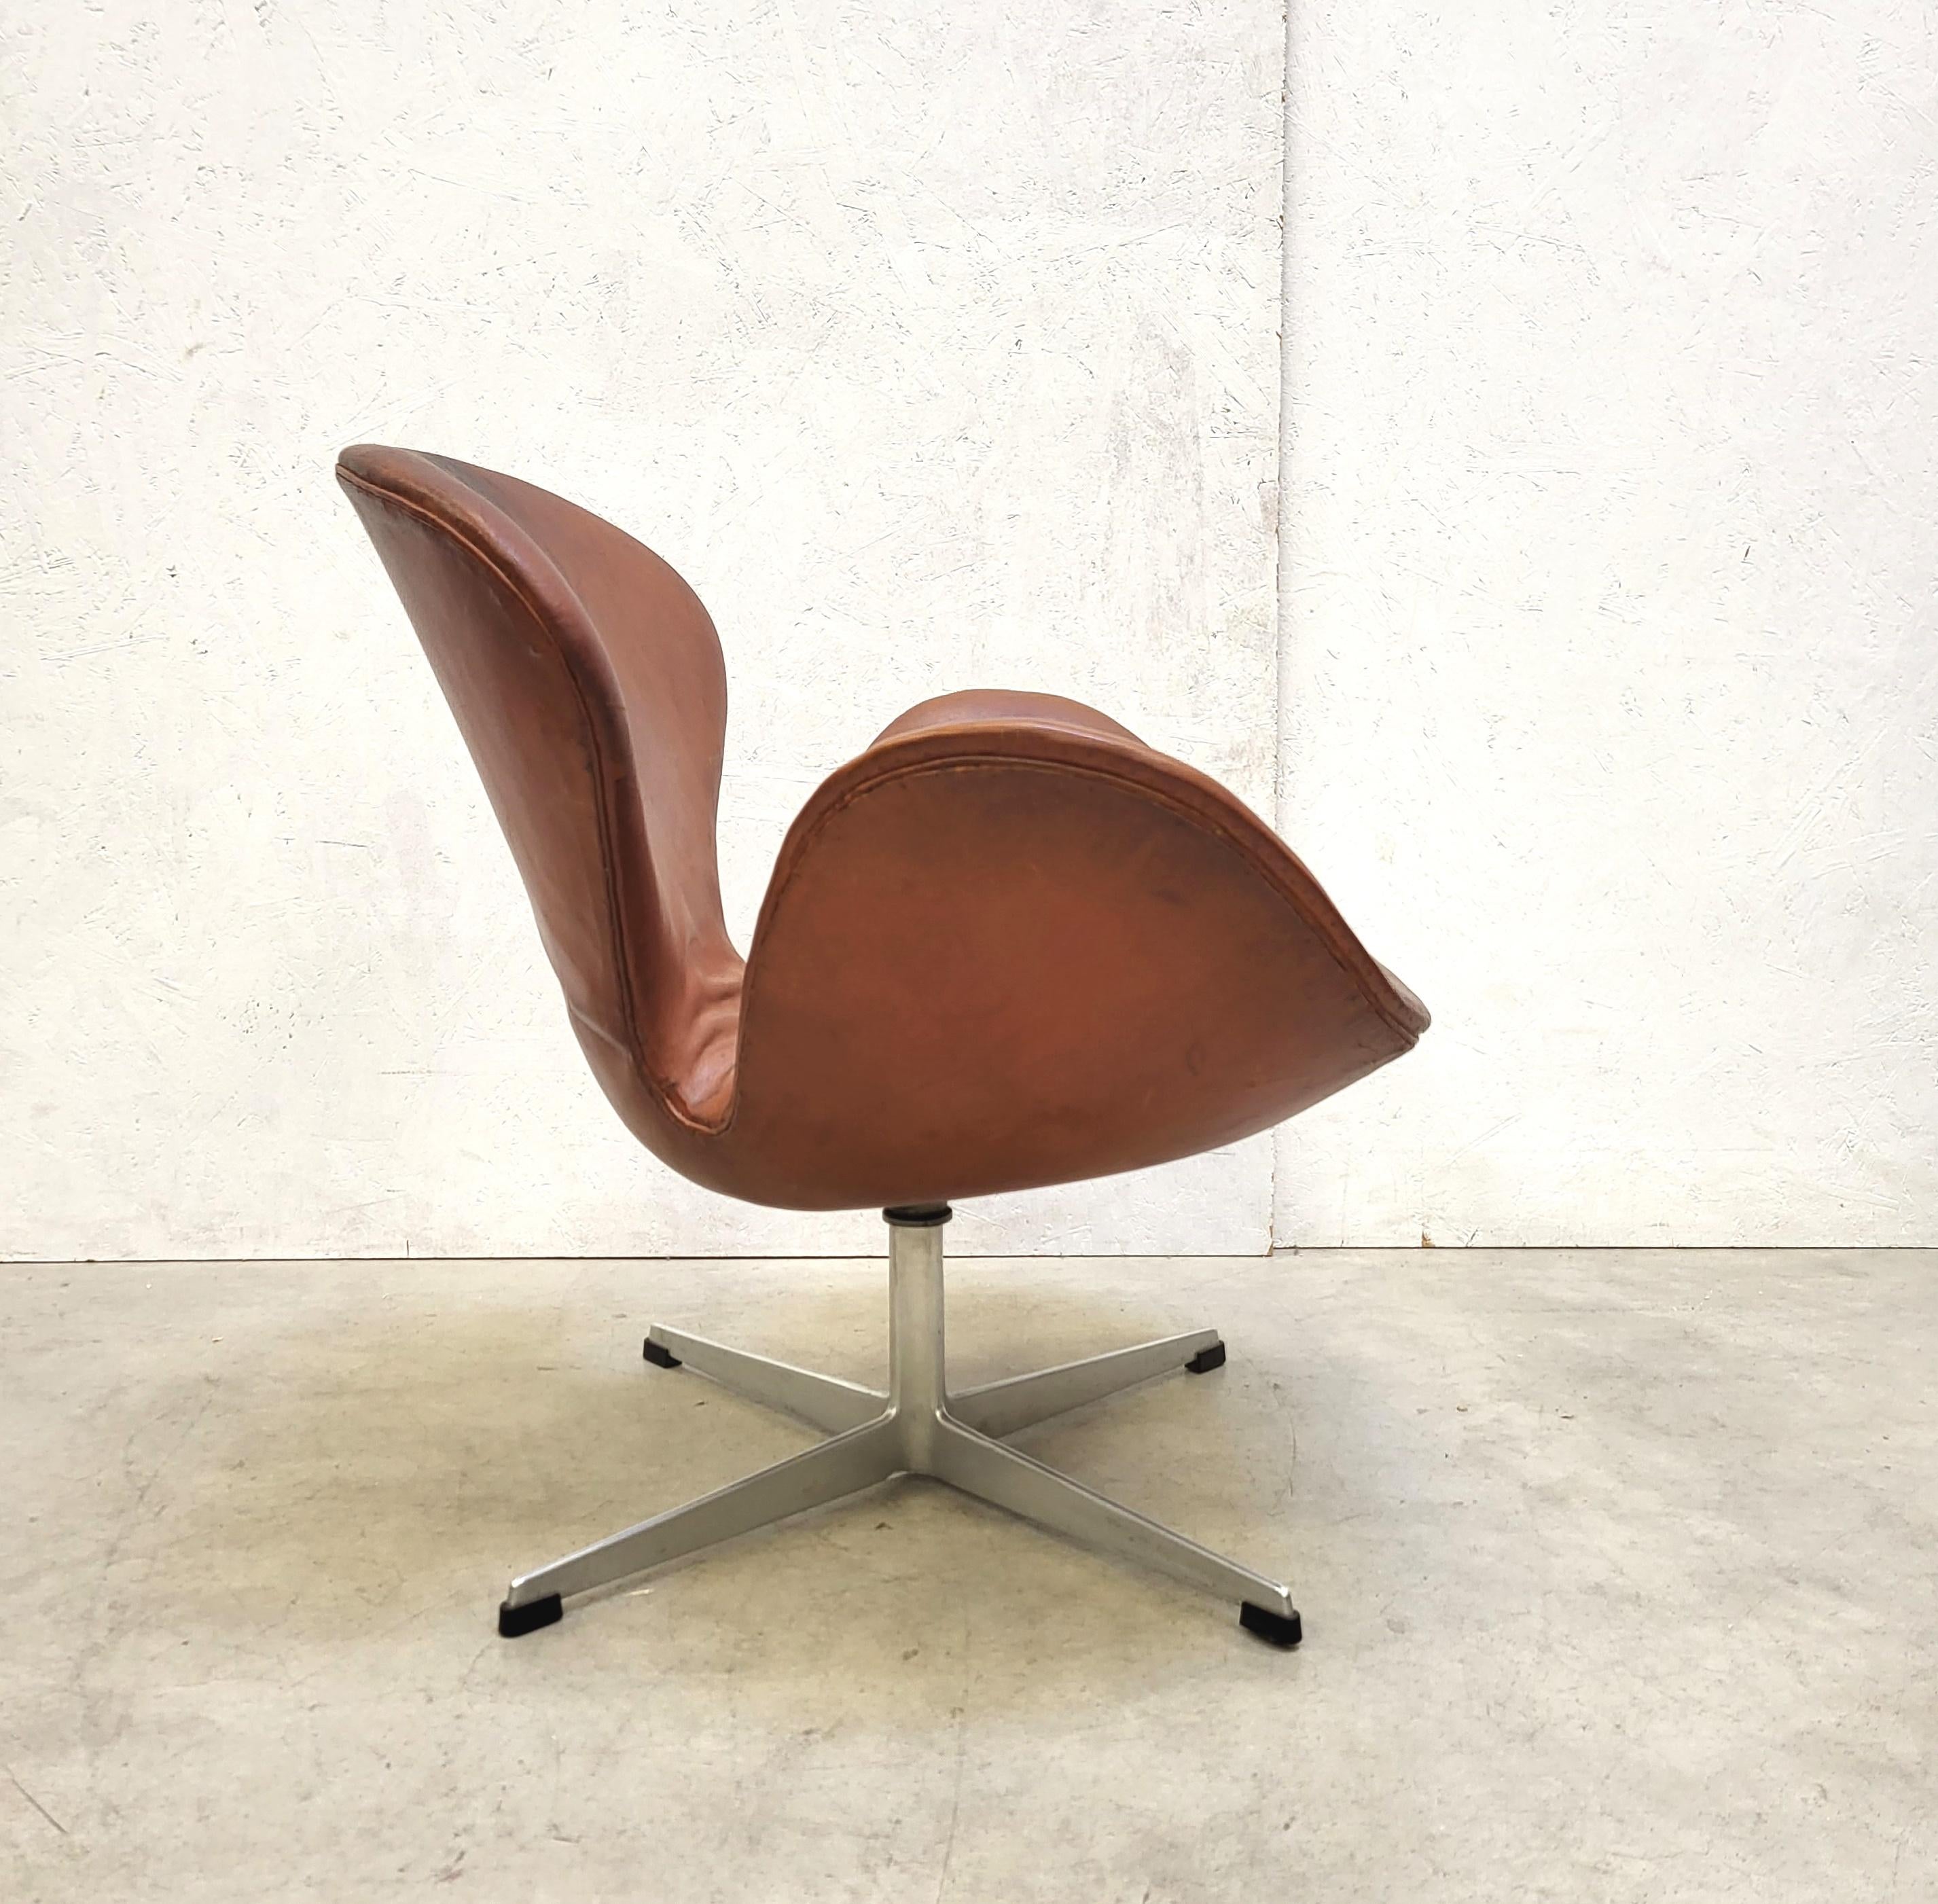 Dieser sehr seltene Schwan-Stuhl in der 1. Auflage wurde in den 1950er Jahren von Arne Jacobsen für das SAS Hotel in Kopenhagen entworfen und von Fritz Hansen um 1958/1959 hergestellt. 

Der Stuhl ist mit einem wunderschönen cognacfarbenen